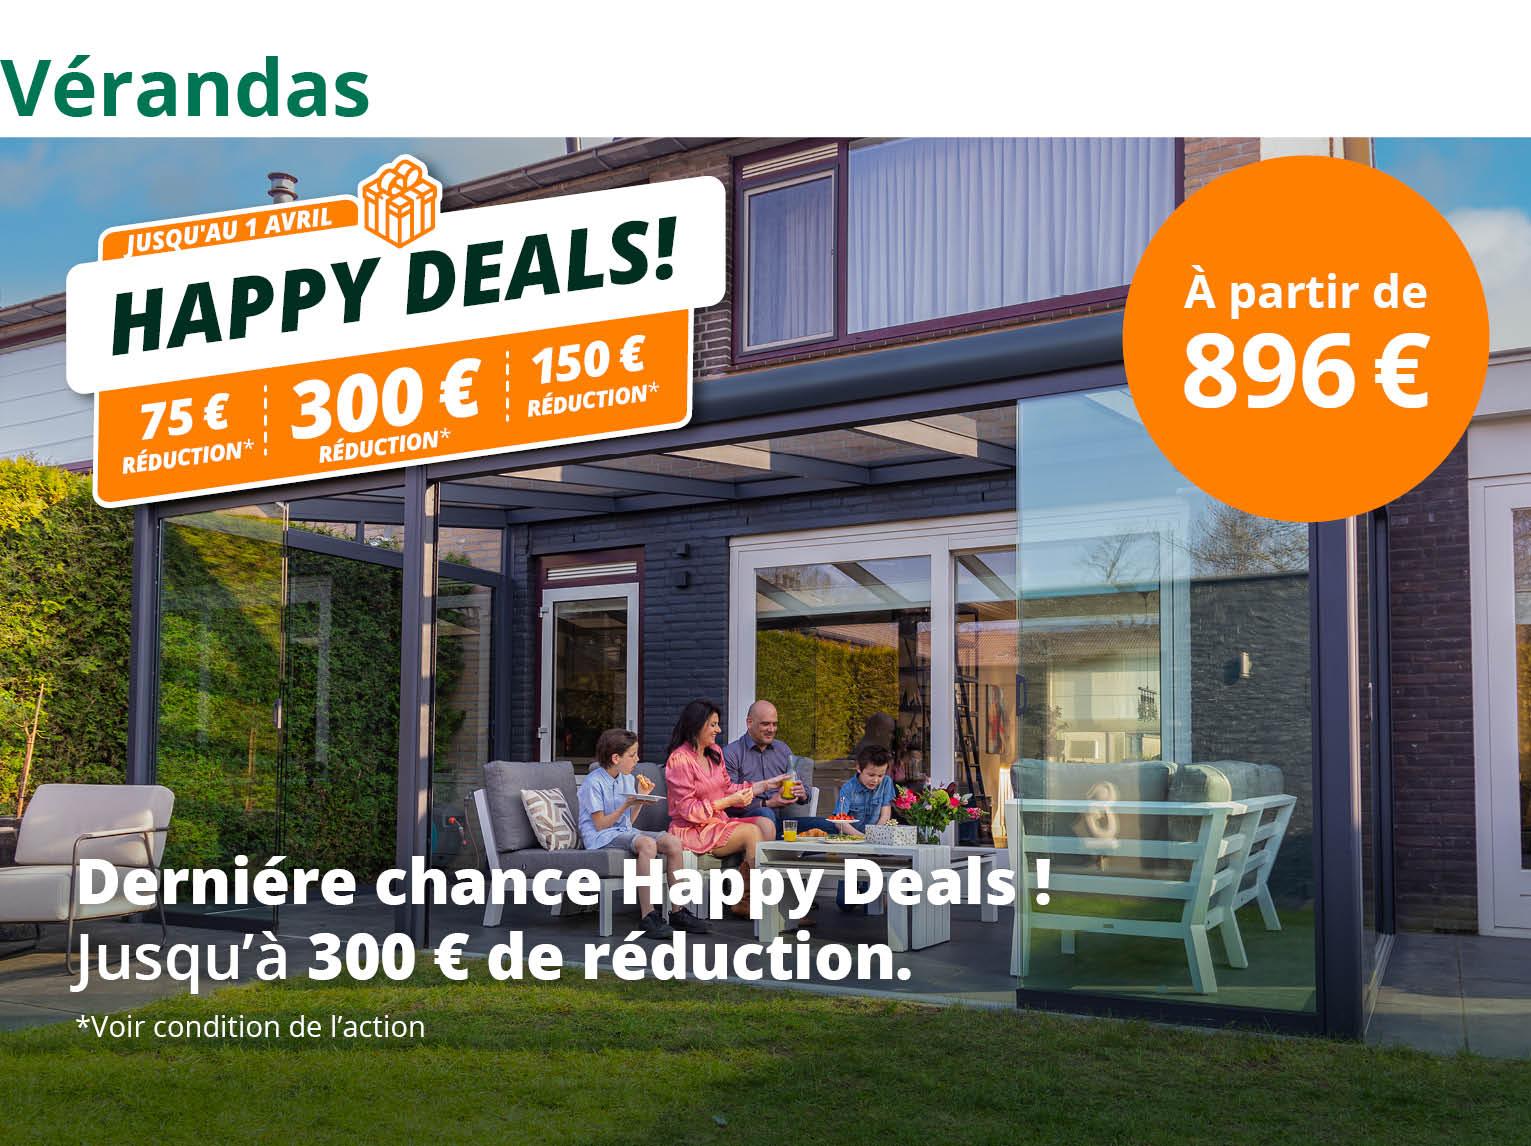 Choisissez maintenant les Happy Deals jusqu'à 300 €* de réduction sur tout la gamme